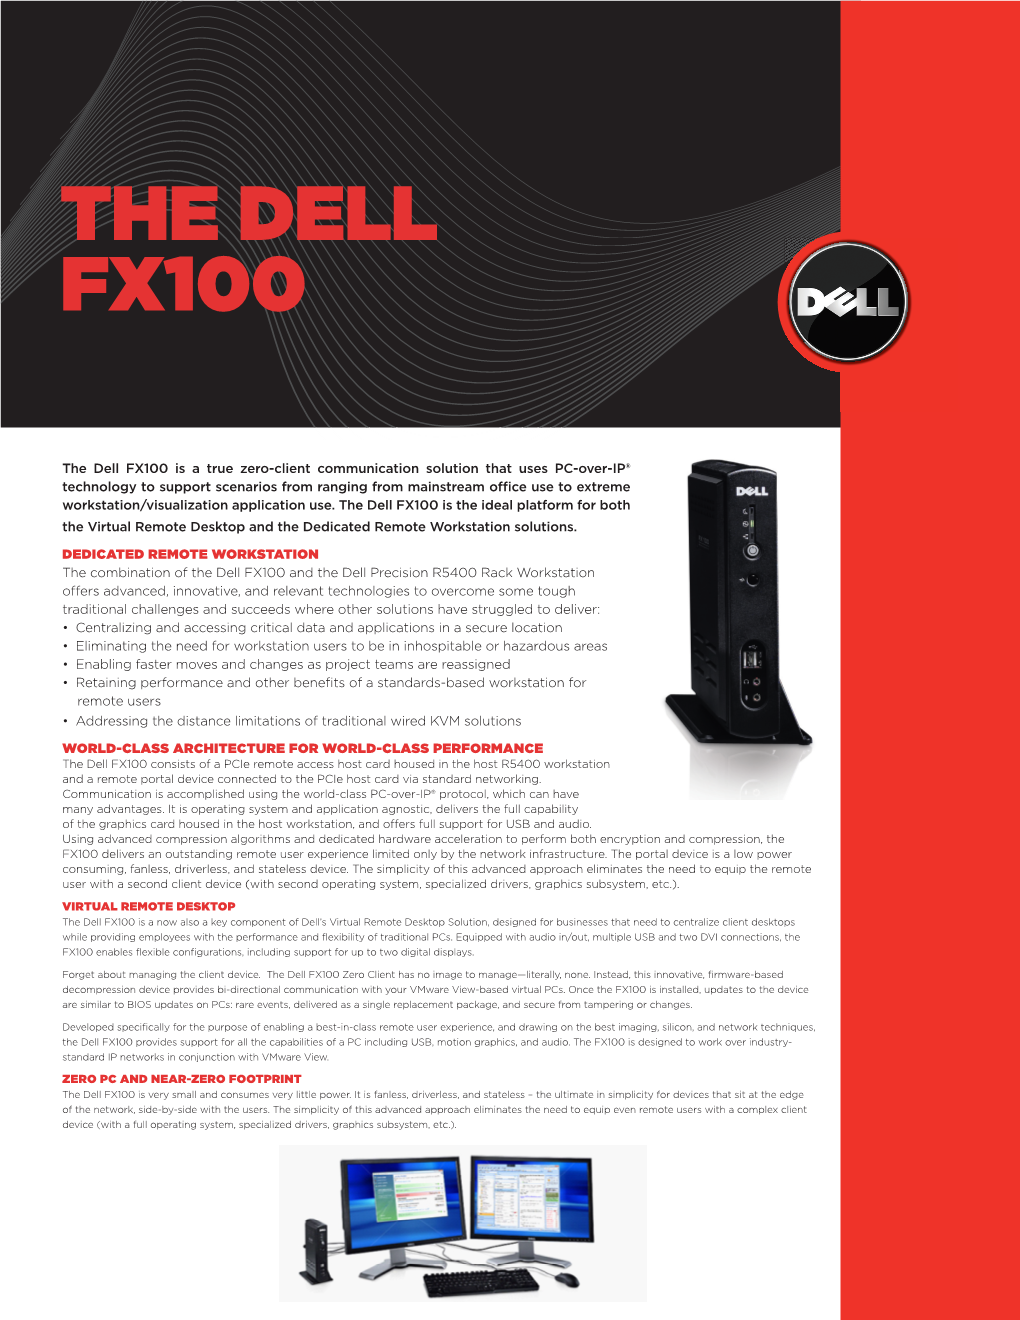 The Dell Fx100